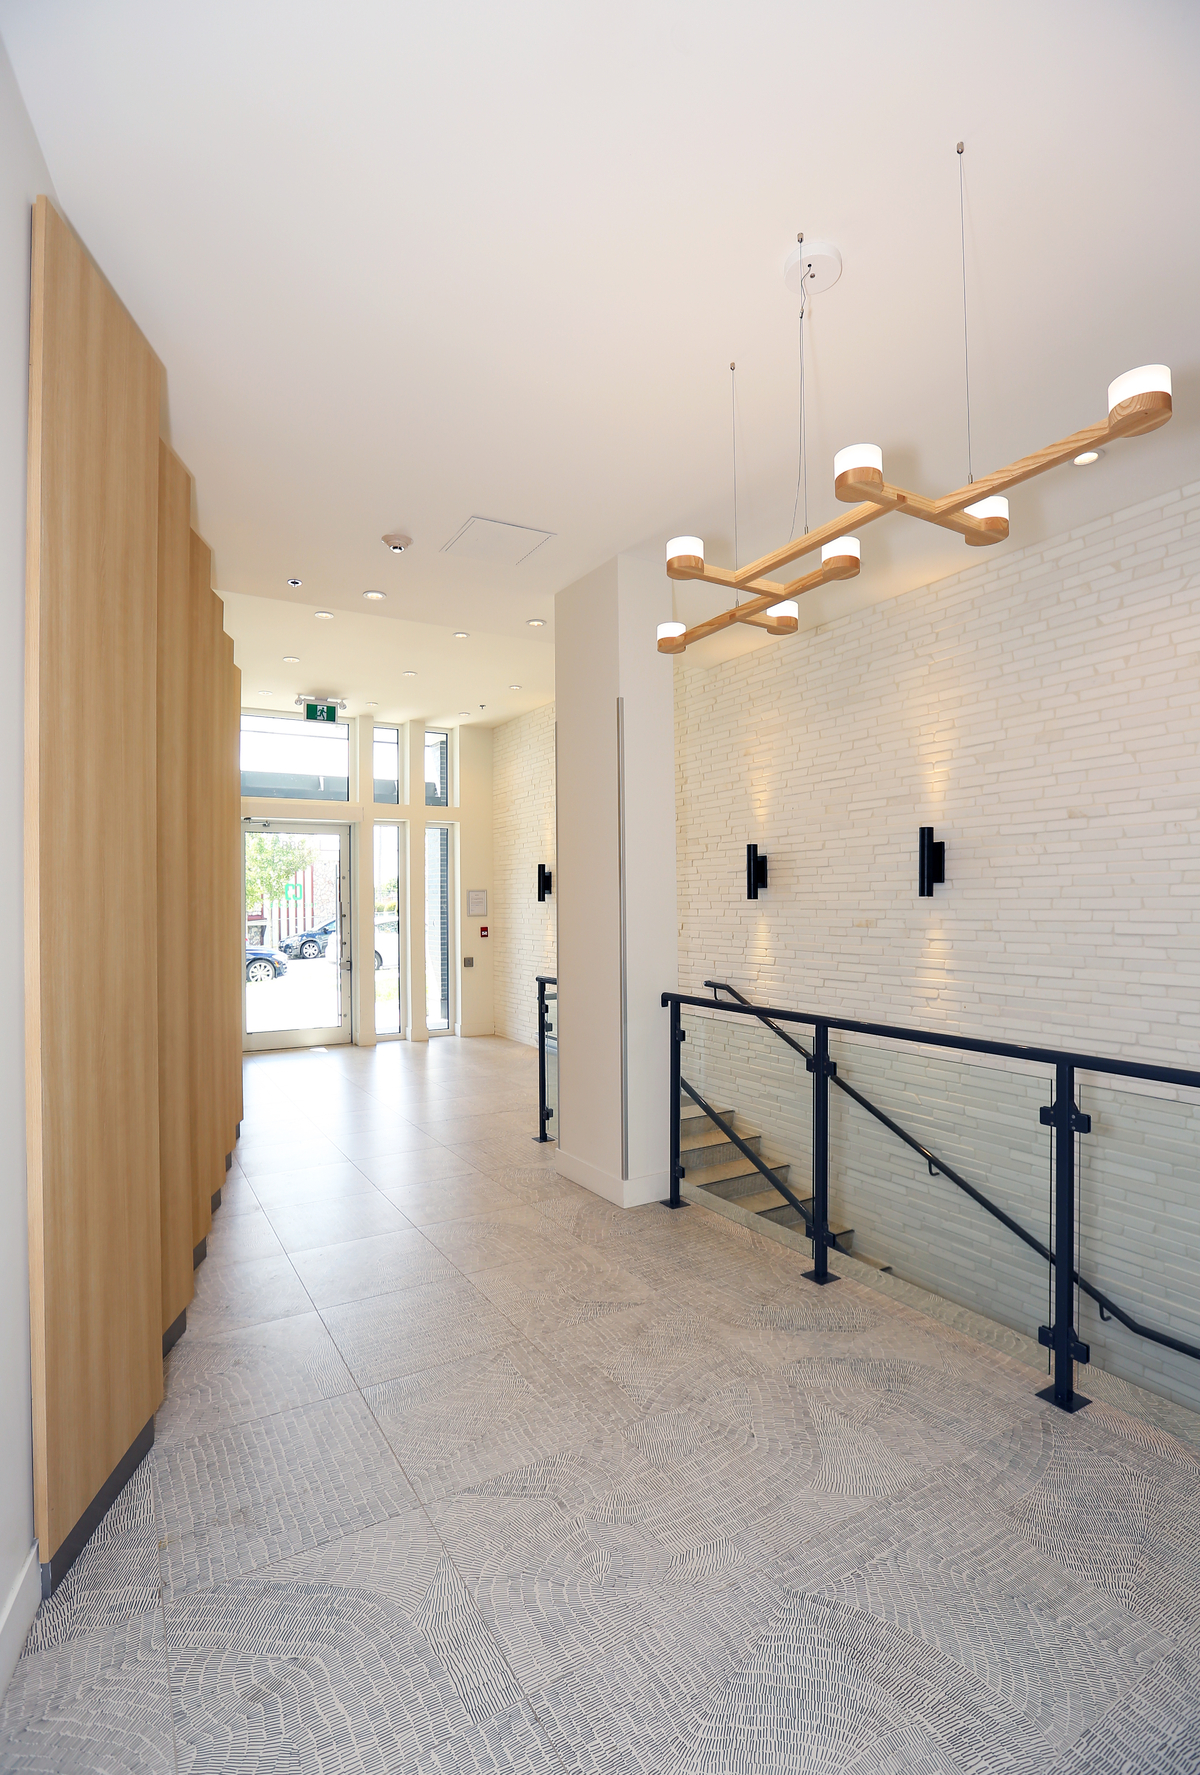 The Heights的室内入口视图，这是一个混合用途项目，有五层轻质木结构住宅，展示了木材的特色和装饰